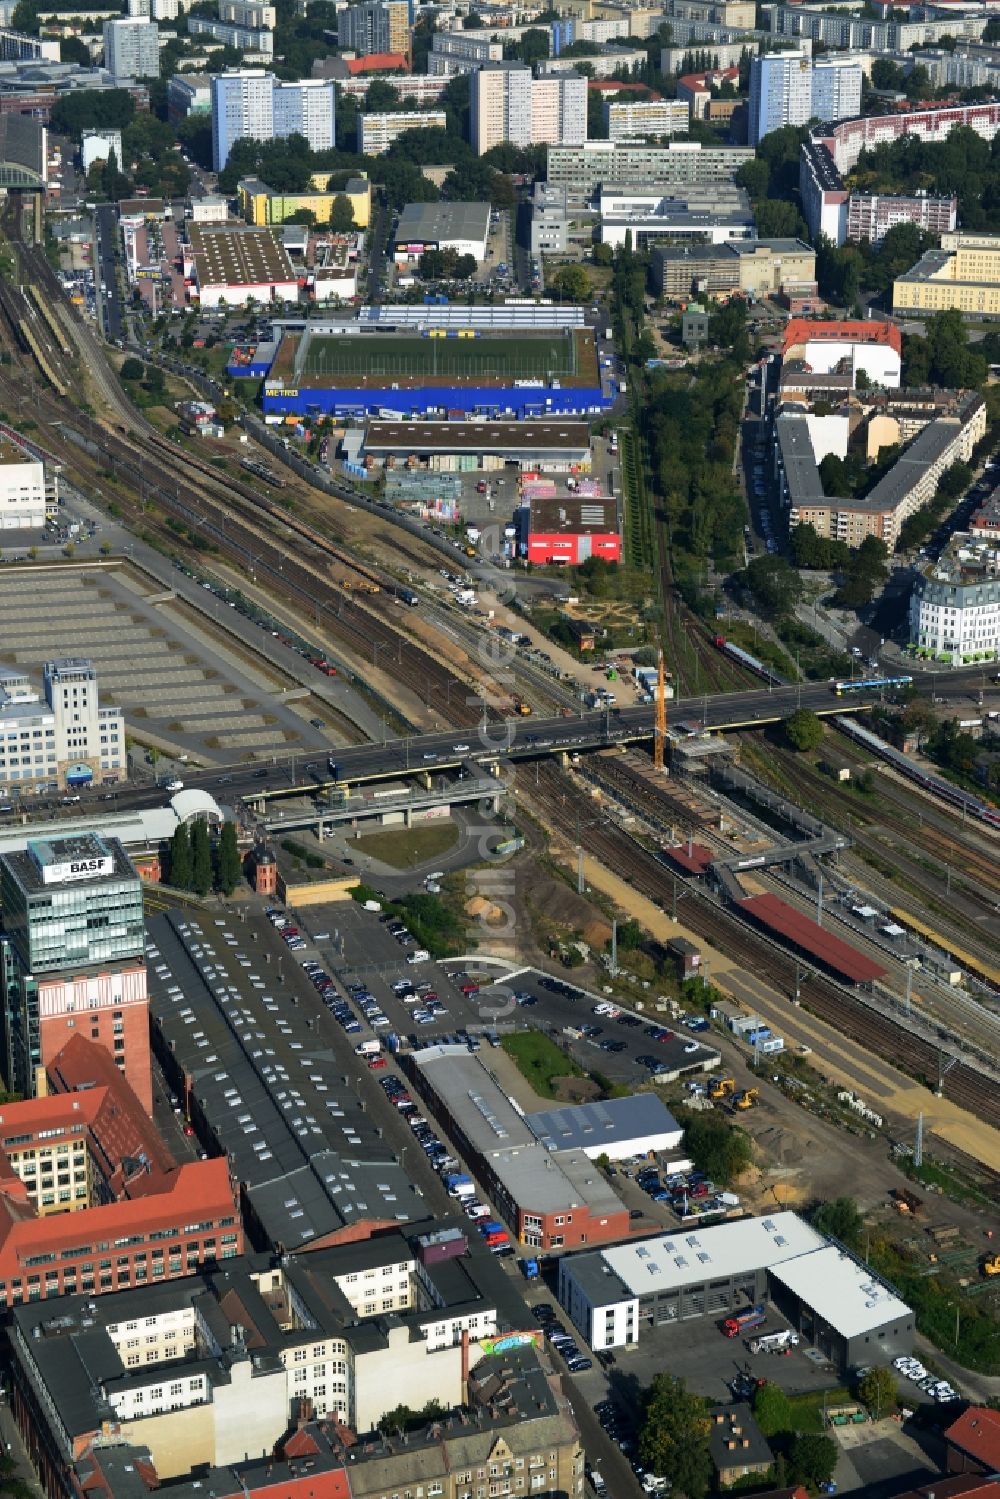 Luftbild Berlin Friedrichshain - Strecken- Ausbau Bahnhof -Warschauer Straße im Stadtteil Friedrichshain von Berlin